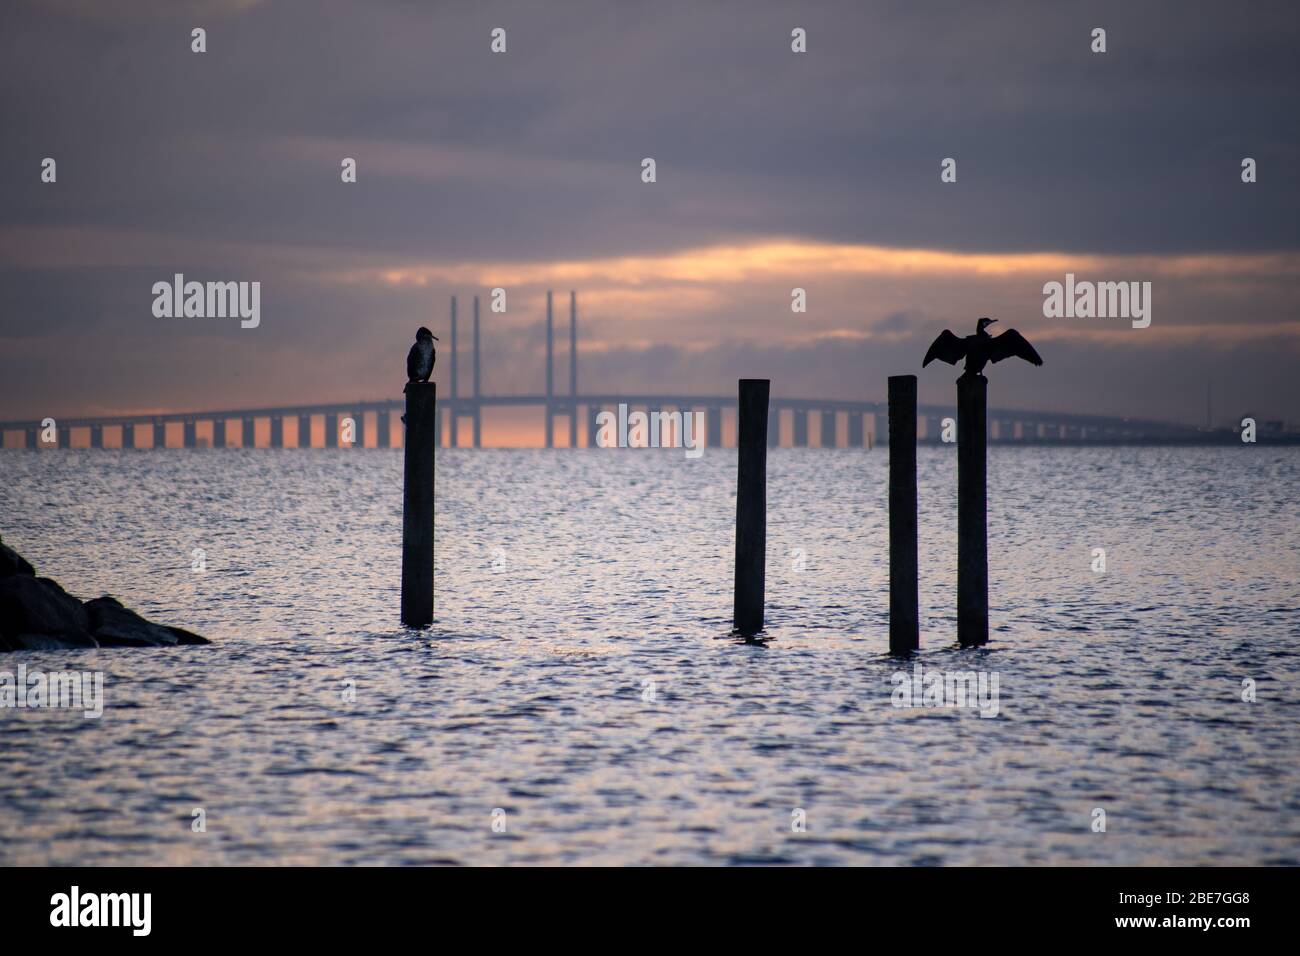 Alcuni cormorani che si erige su pali e asciugano sullo sfondo il ponte tra Copenaghen Danimarca e Malmo Svezia, Oresundsbro, Foto Stock